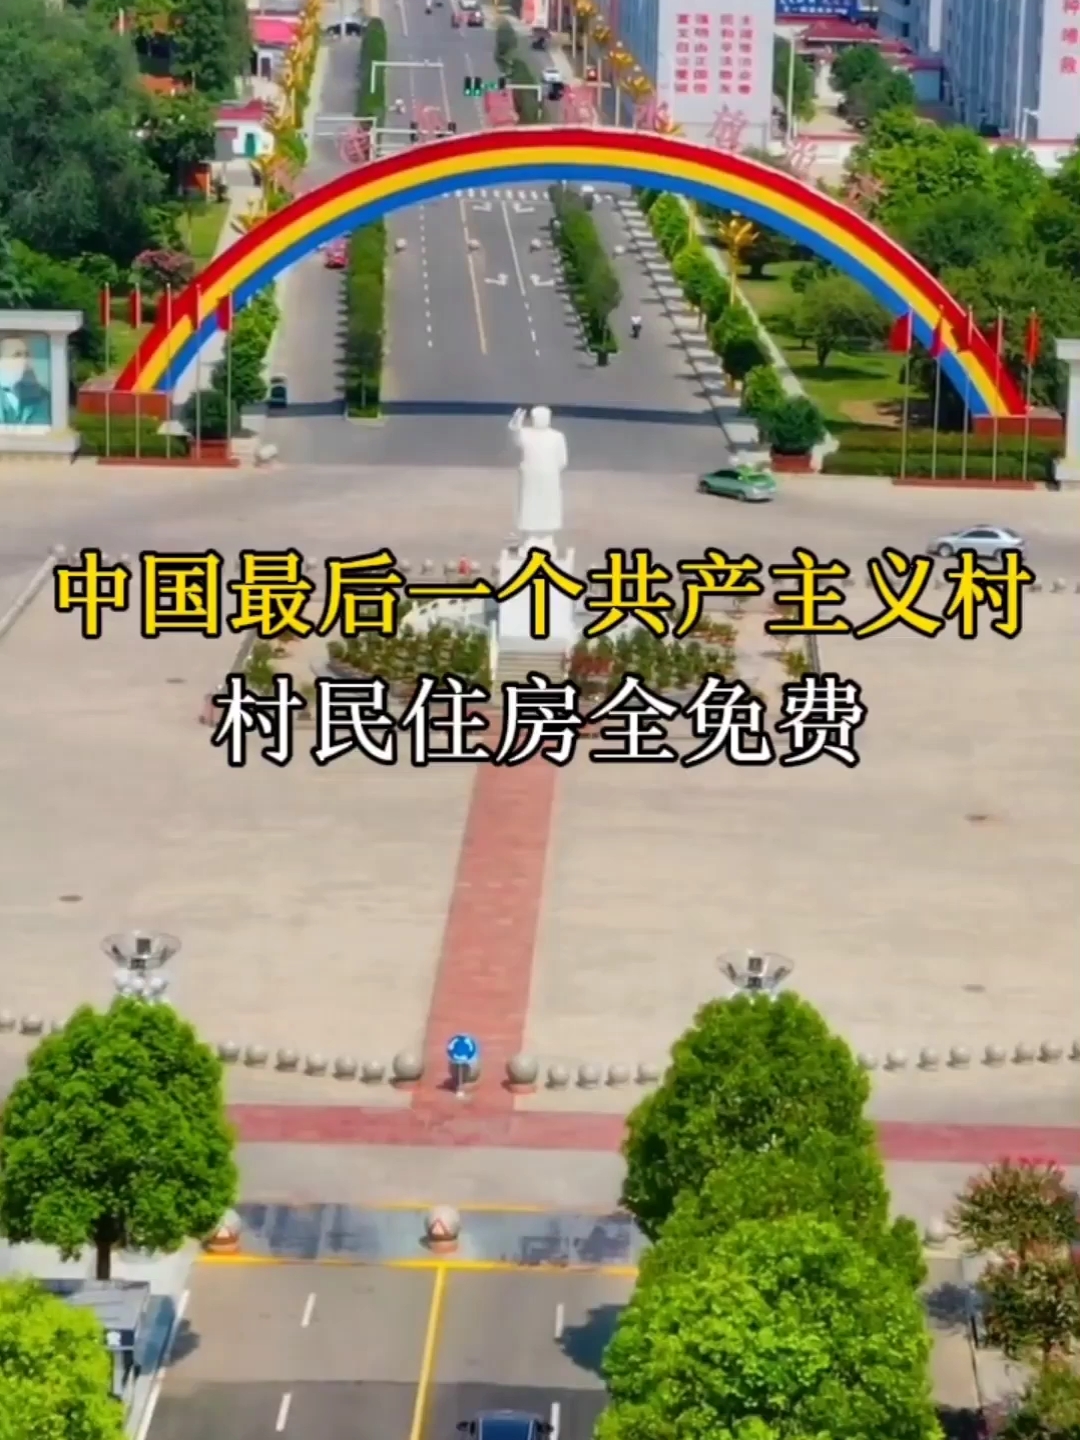 中国最后一个共产主义村 村民住房全免费